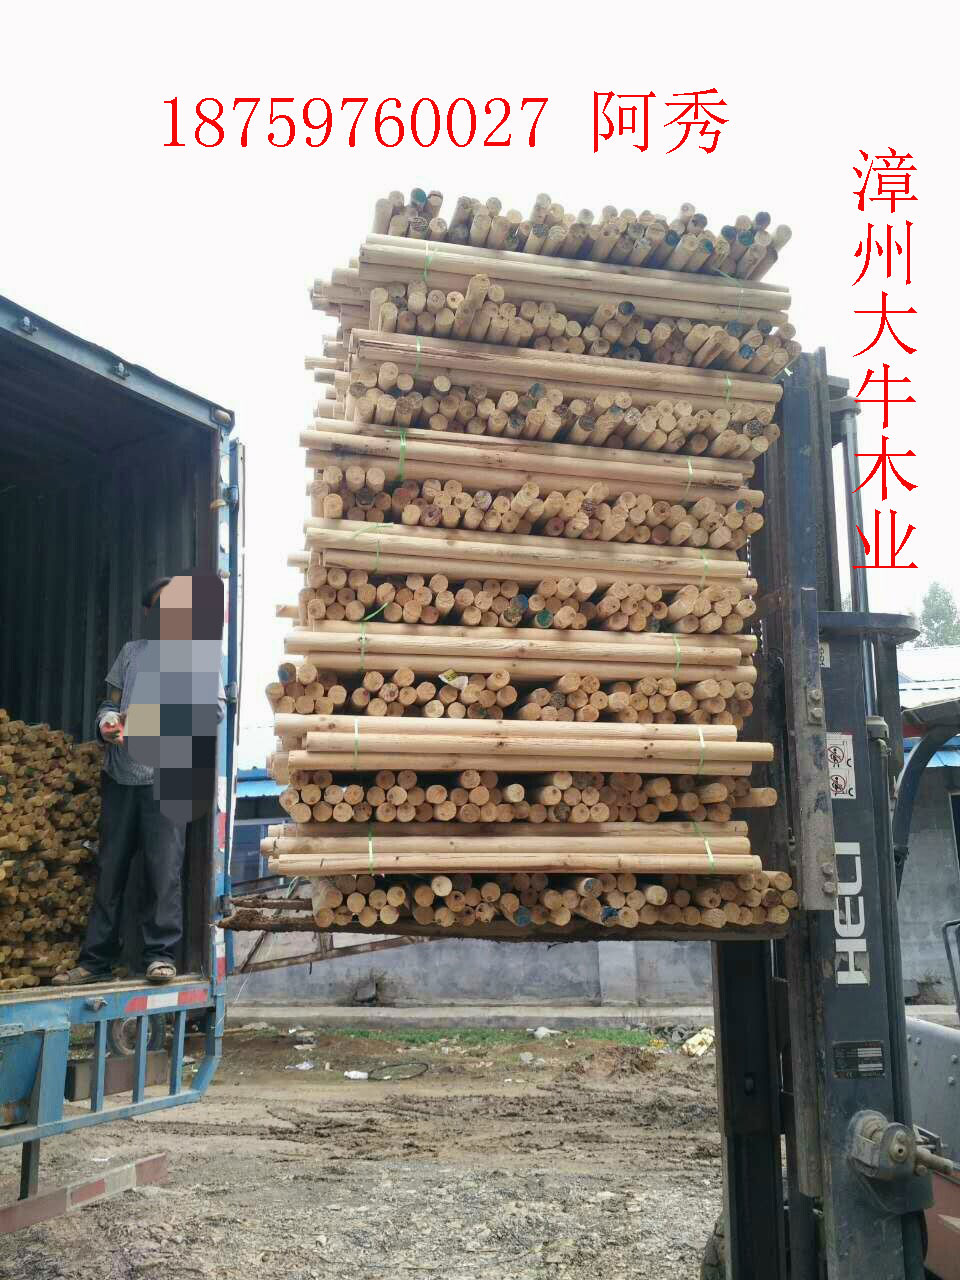 福建漳州优质松木木芯厂家松木柱子批发松木木芯松木柱子加工图片